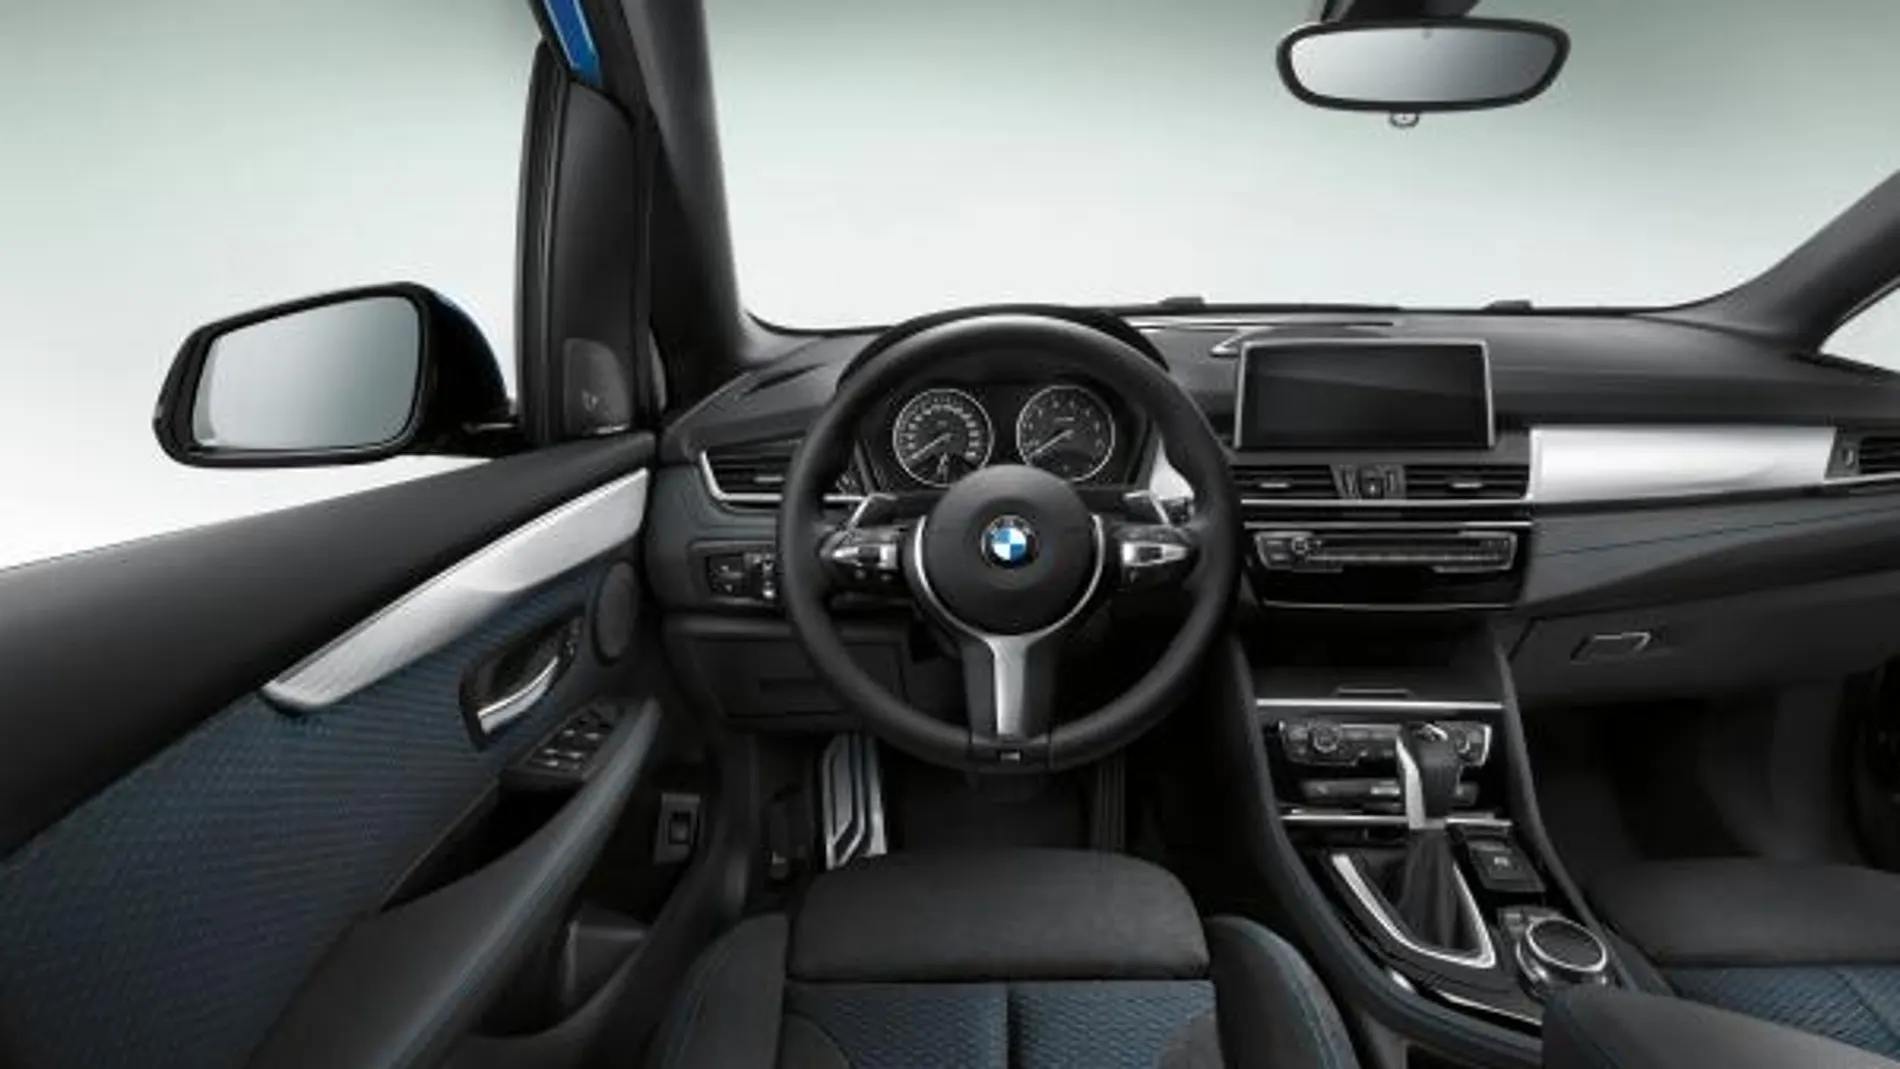 El BMW Serie 2 Active Tourer ha obtenido la máxima puntuación en los test de choque de Euro NCAP.